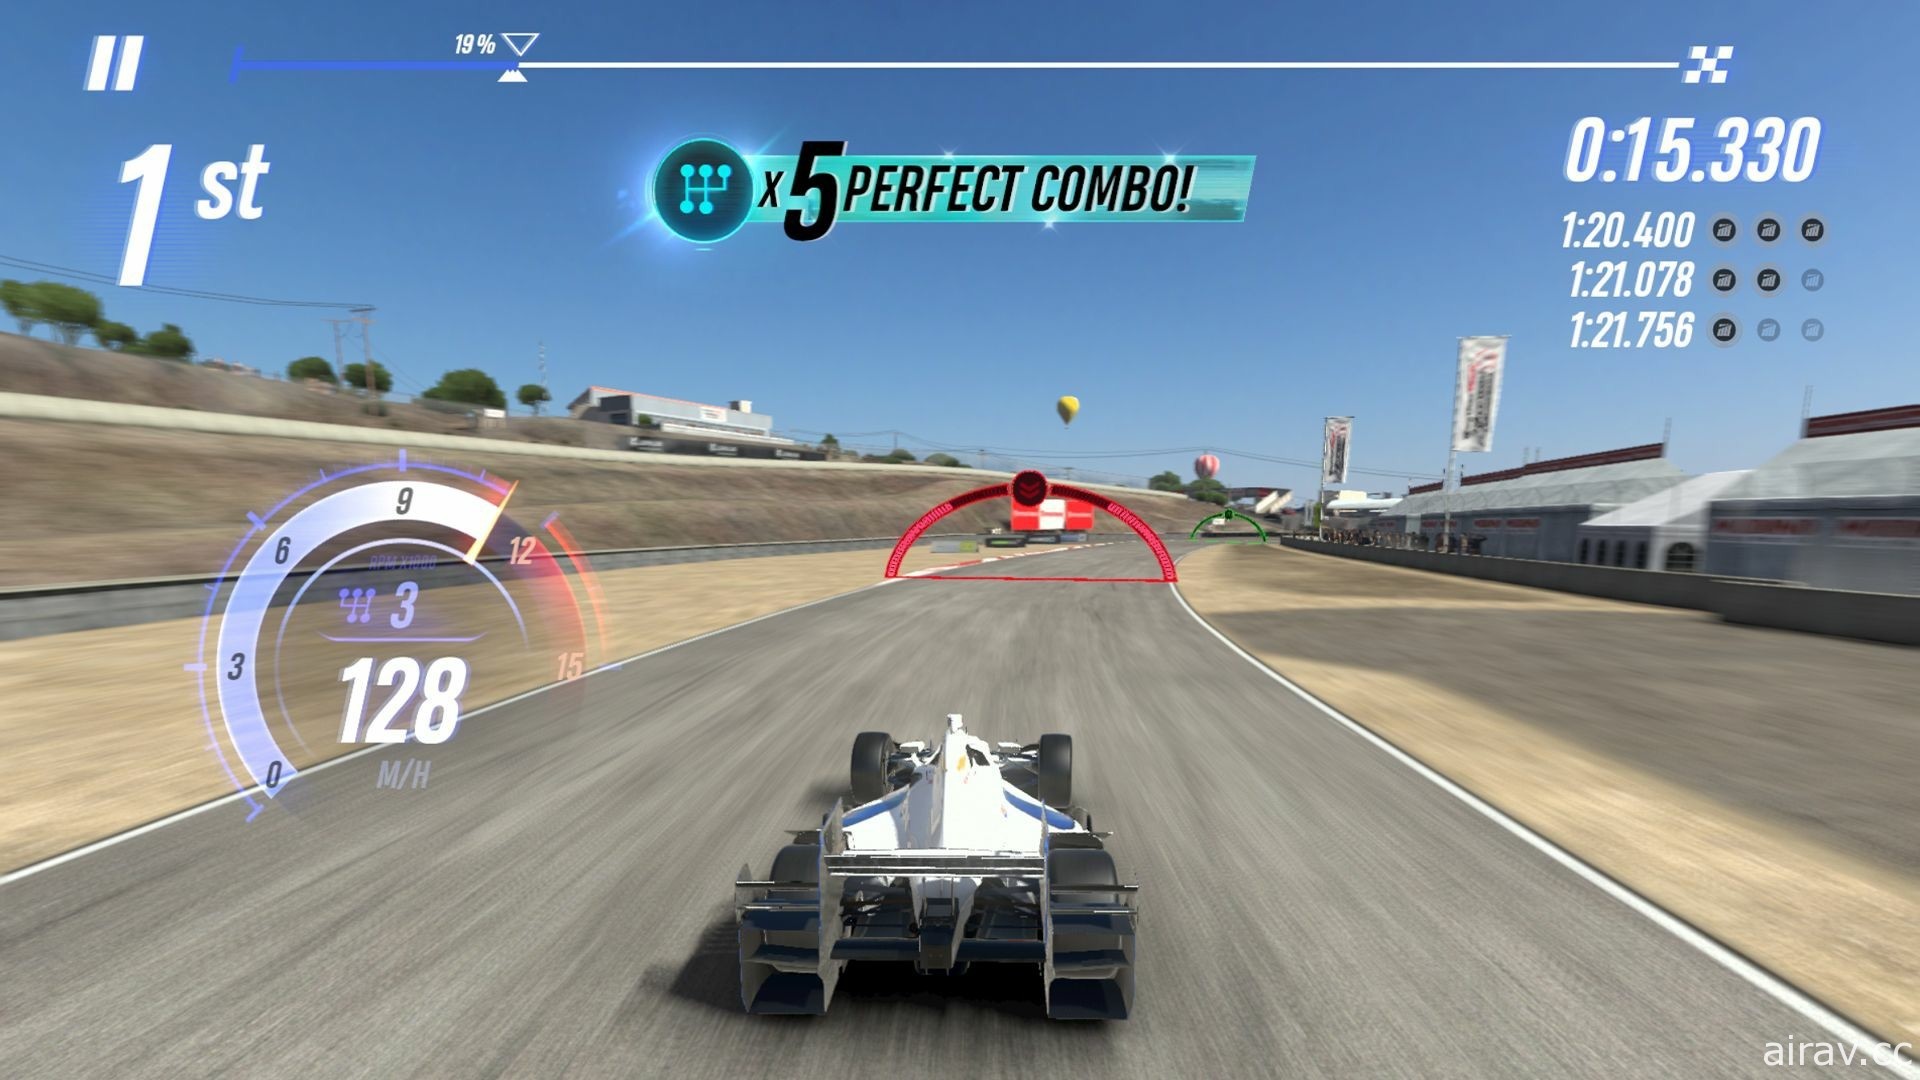 模擬競速遊戲《Project CARS GO》在推出 8 個月後宣布結束營運